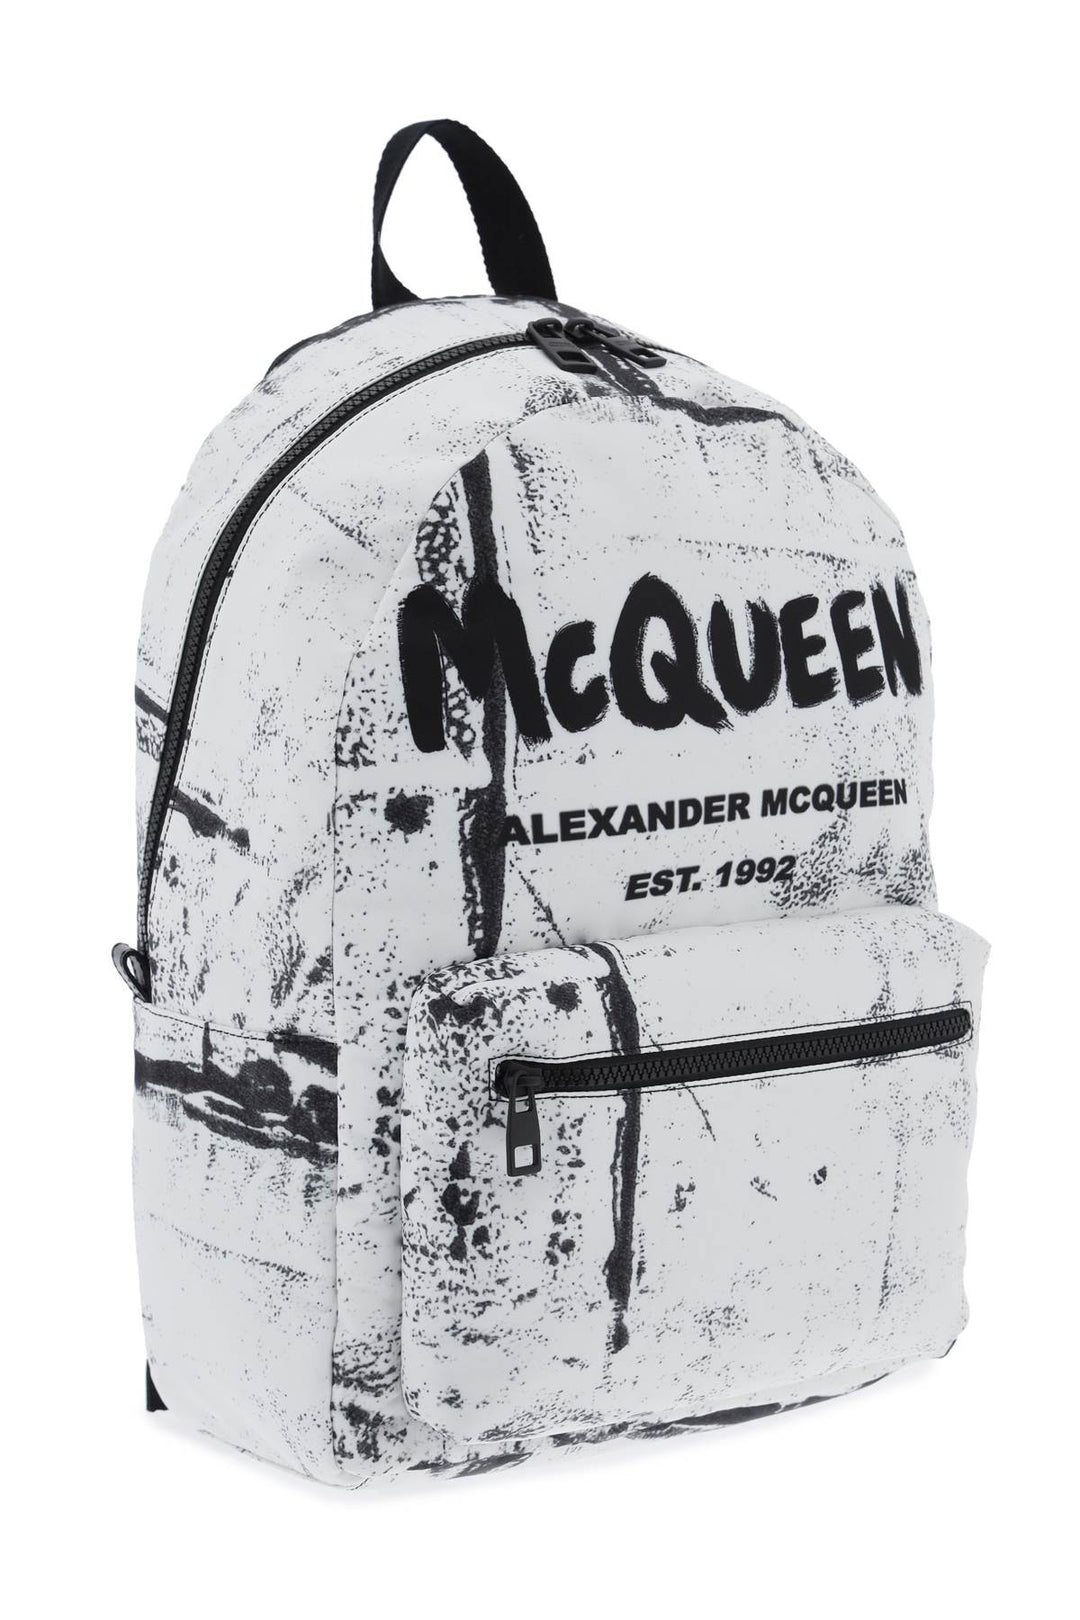 Alexander mcqueen metropolitan backpack-2